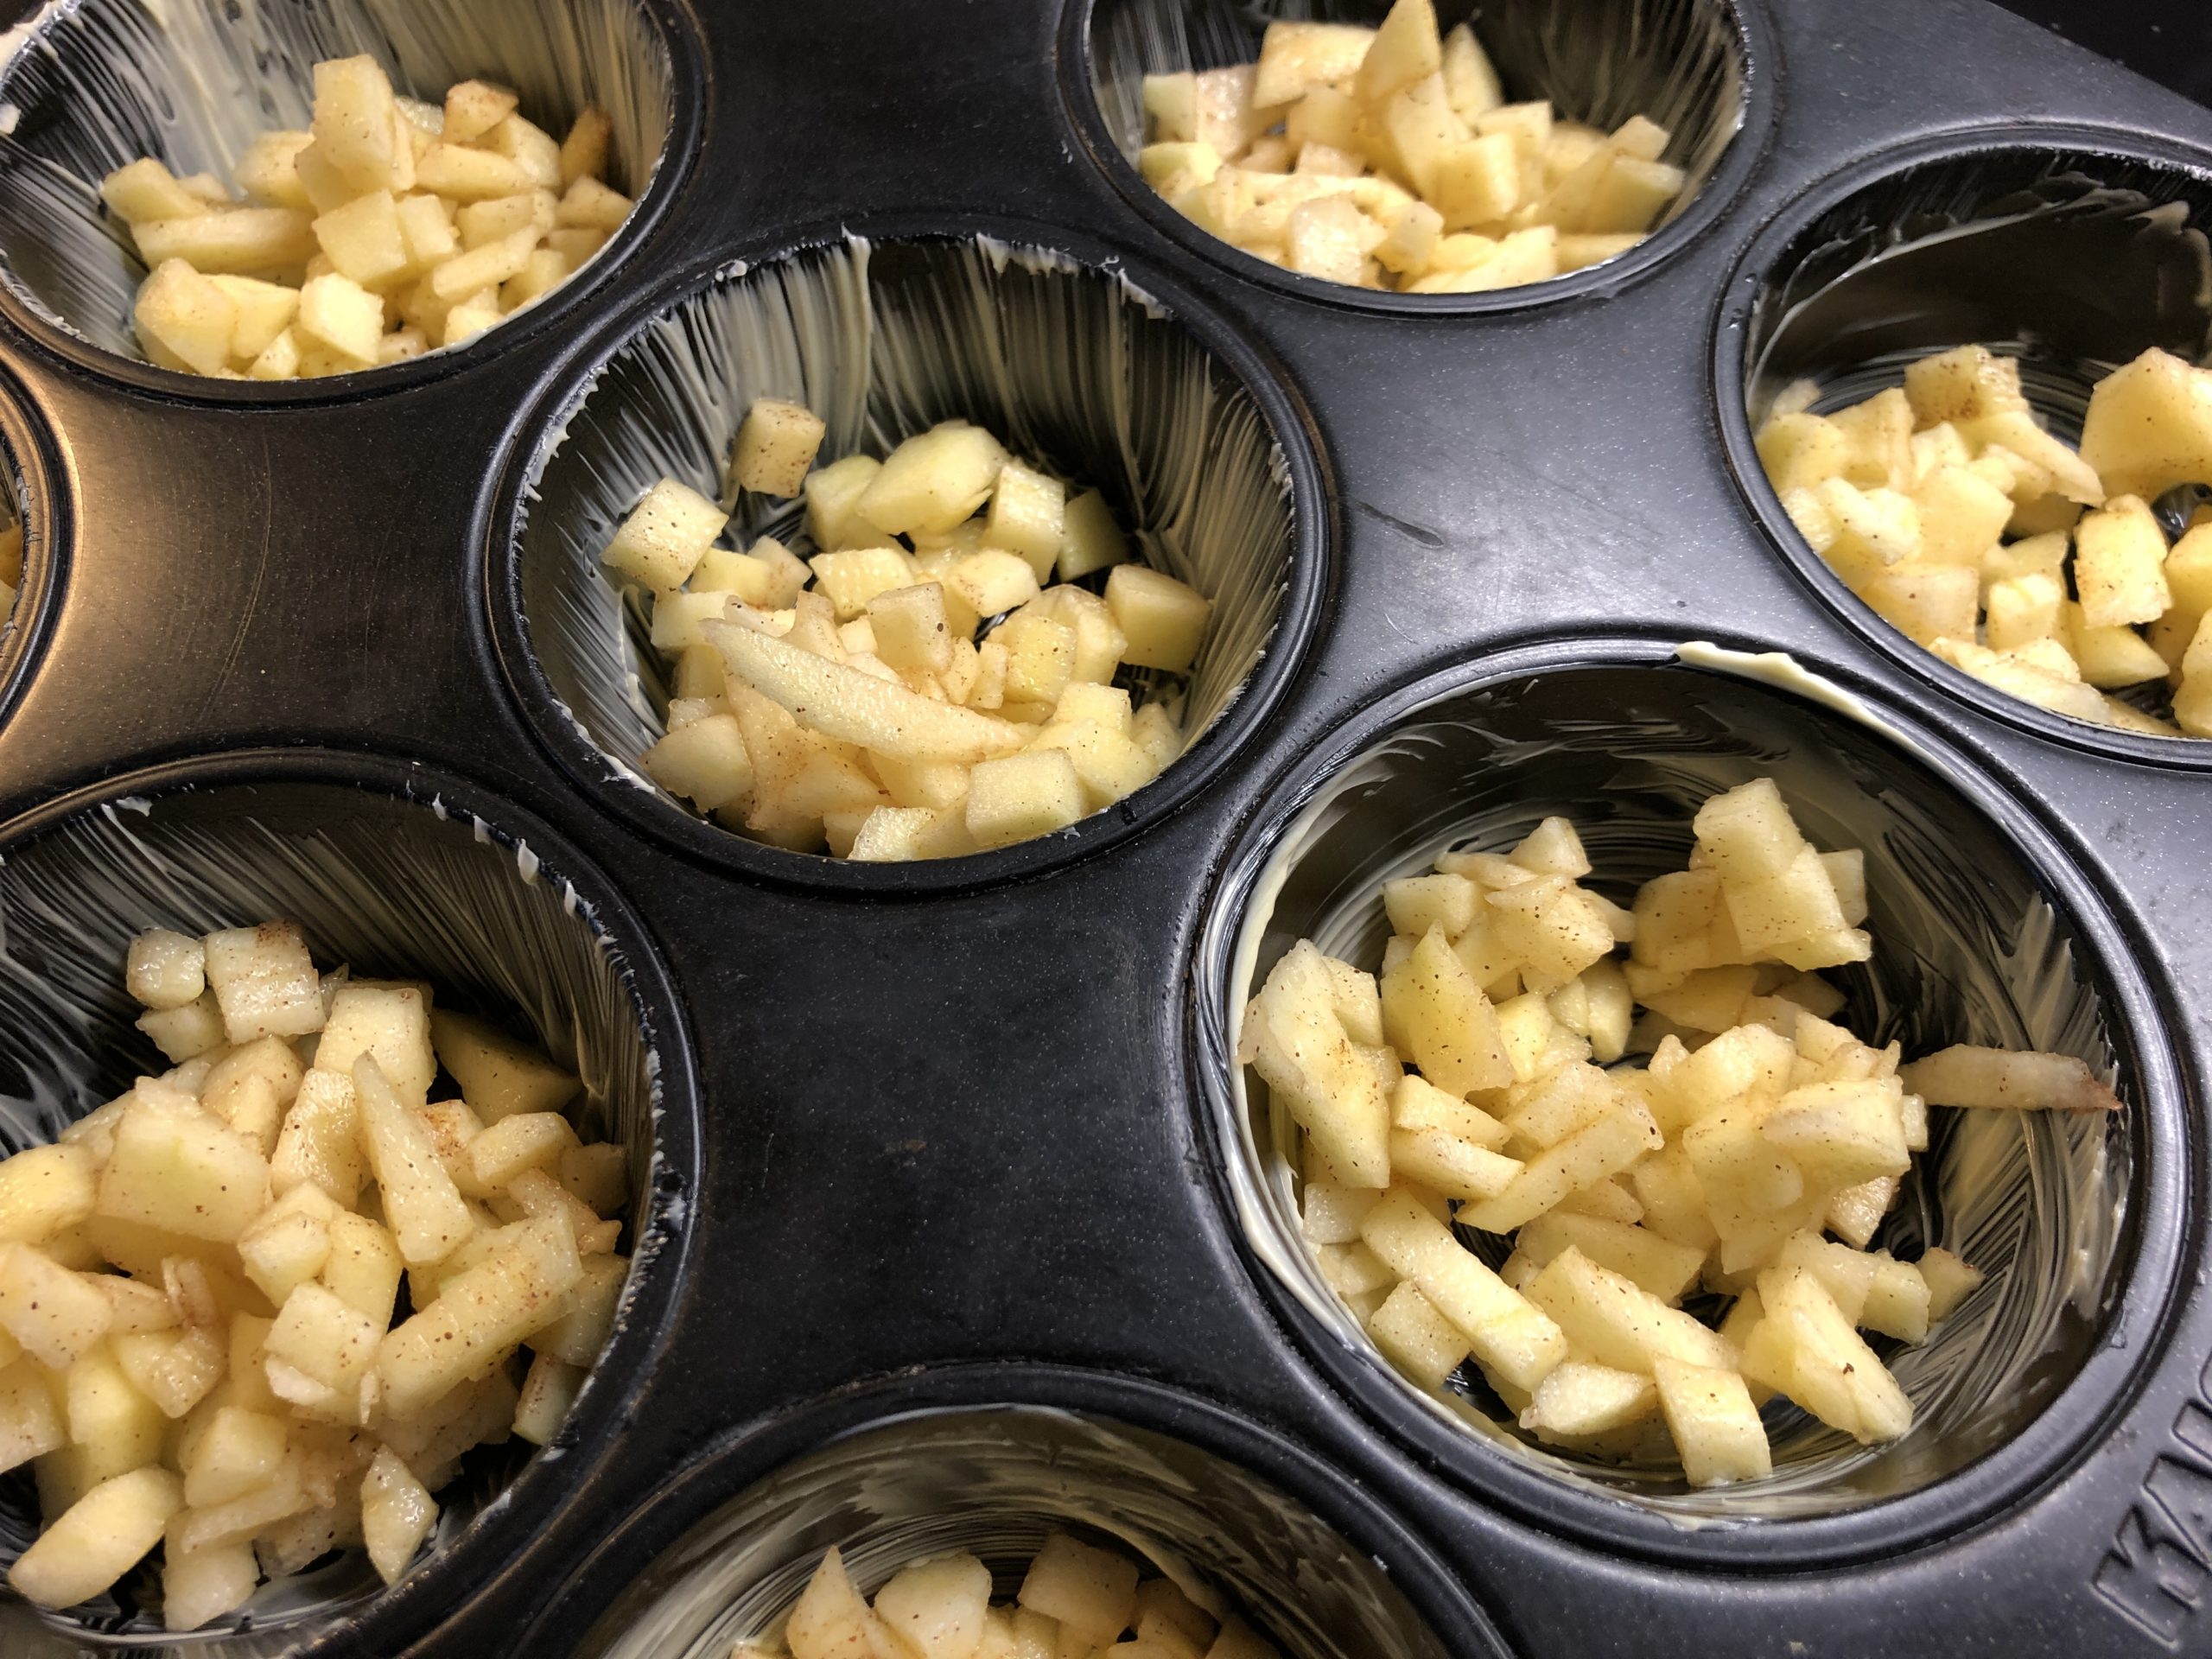 Bild zum Schritt 21 für die Kinder-Beschäftigung: 'Zuerst wird die Apfelmasse in die Muffin-Formen gefüllt.'